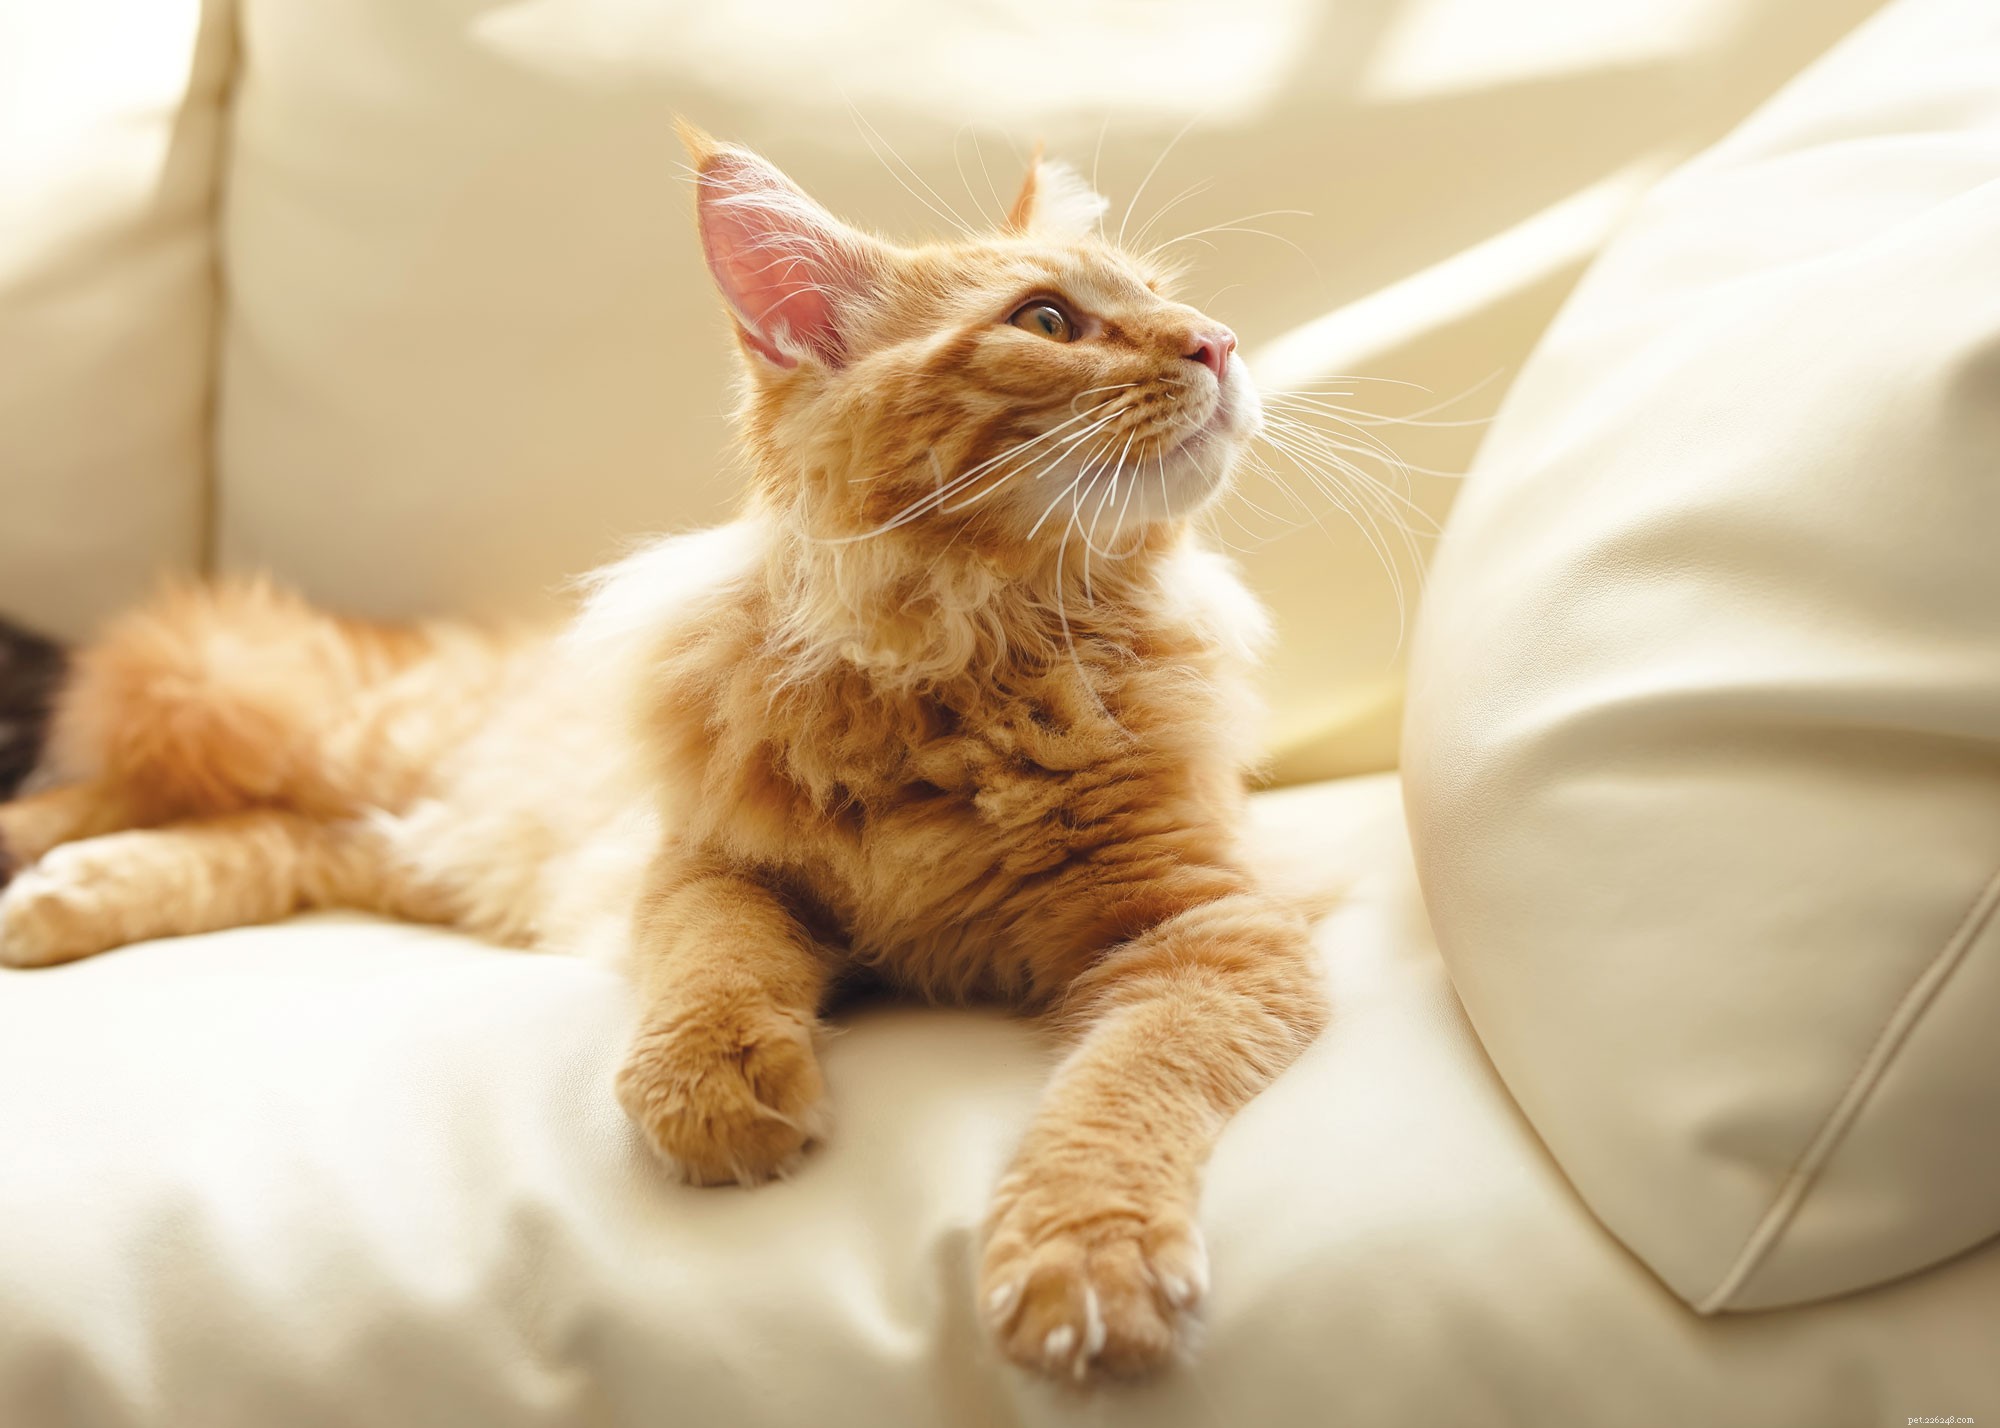 8 faits intéressants sur les chats pour tous les amoureux des chats